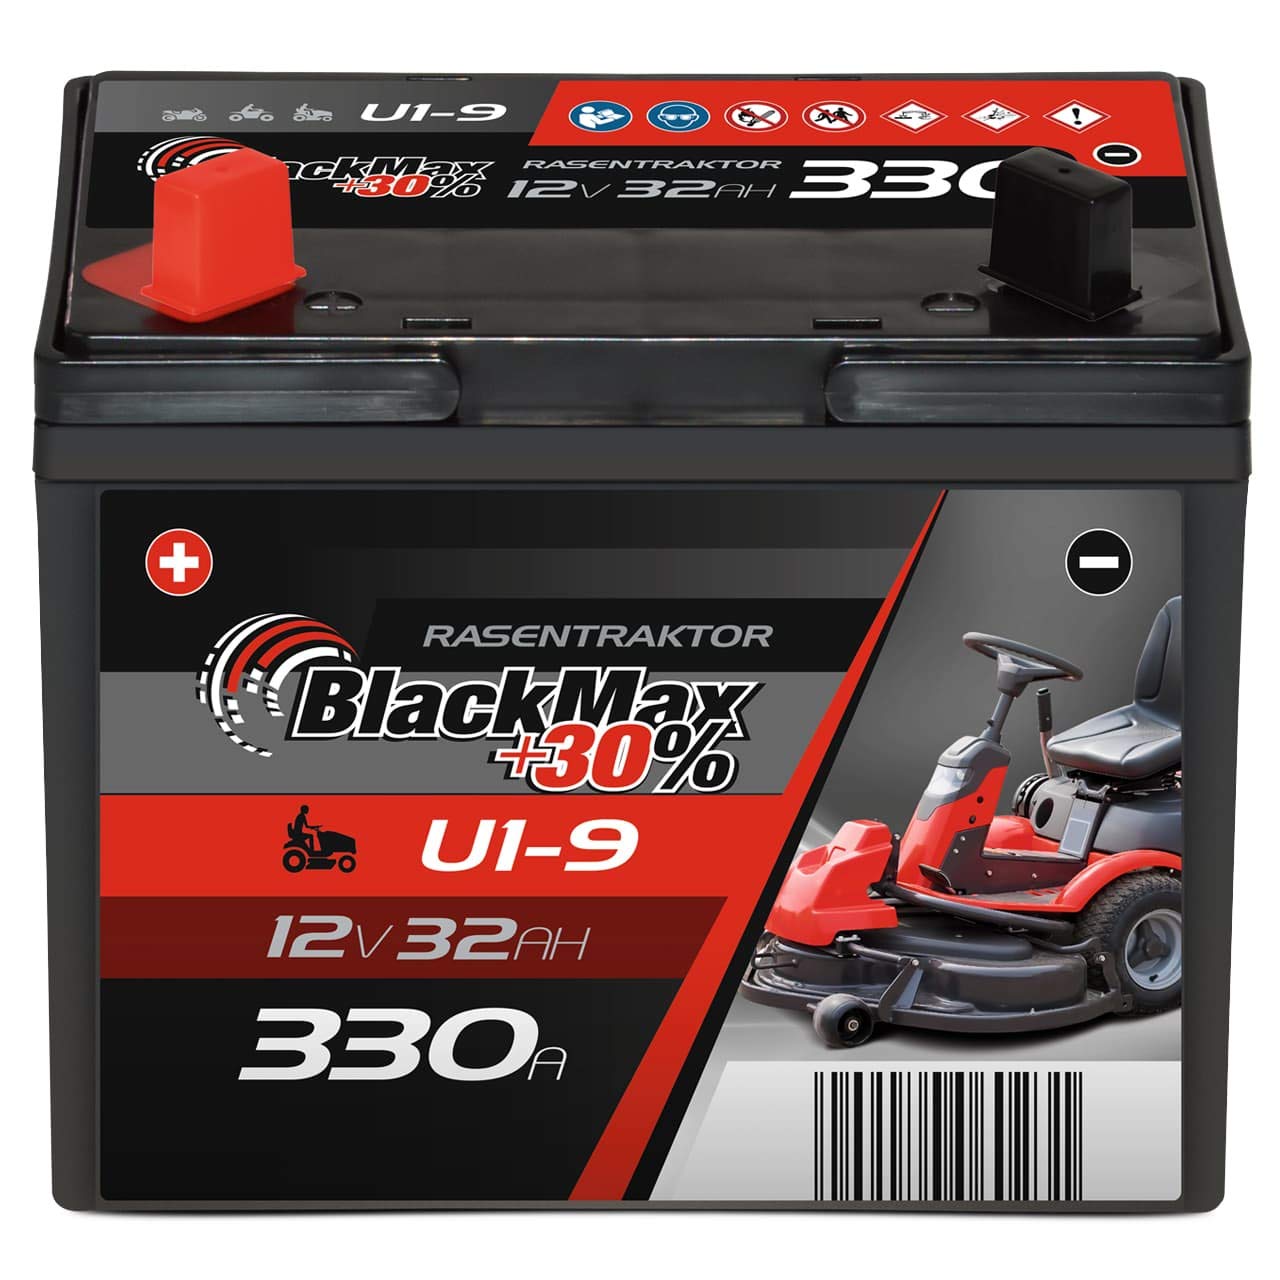 BlackMax Rasentraktor Batterie 12V 32Ah 330A (Pluspol links) - U1-9 +30% Starterbatterie (12 Volt) für Aufsitzmäher und Rasenmäher-Traktoren - wartungsfrei & wiederaufladbar